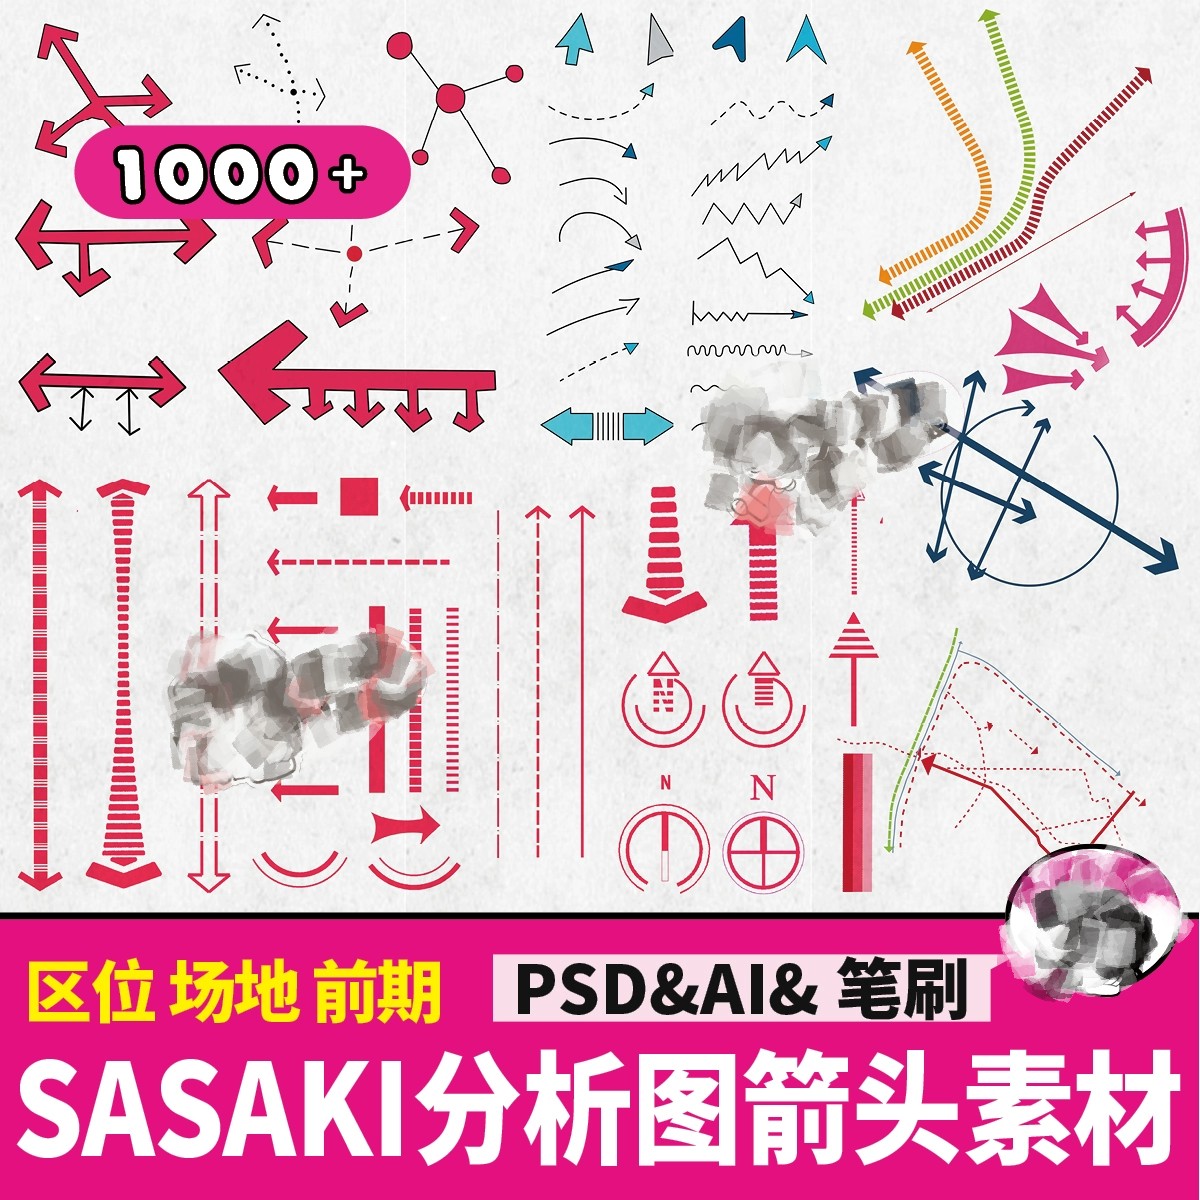 SASAKI箭头ps素材库前期人群区位分析图PSD建筑景观设计笔刷素材